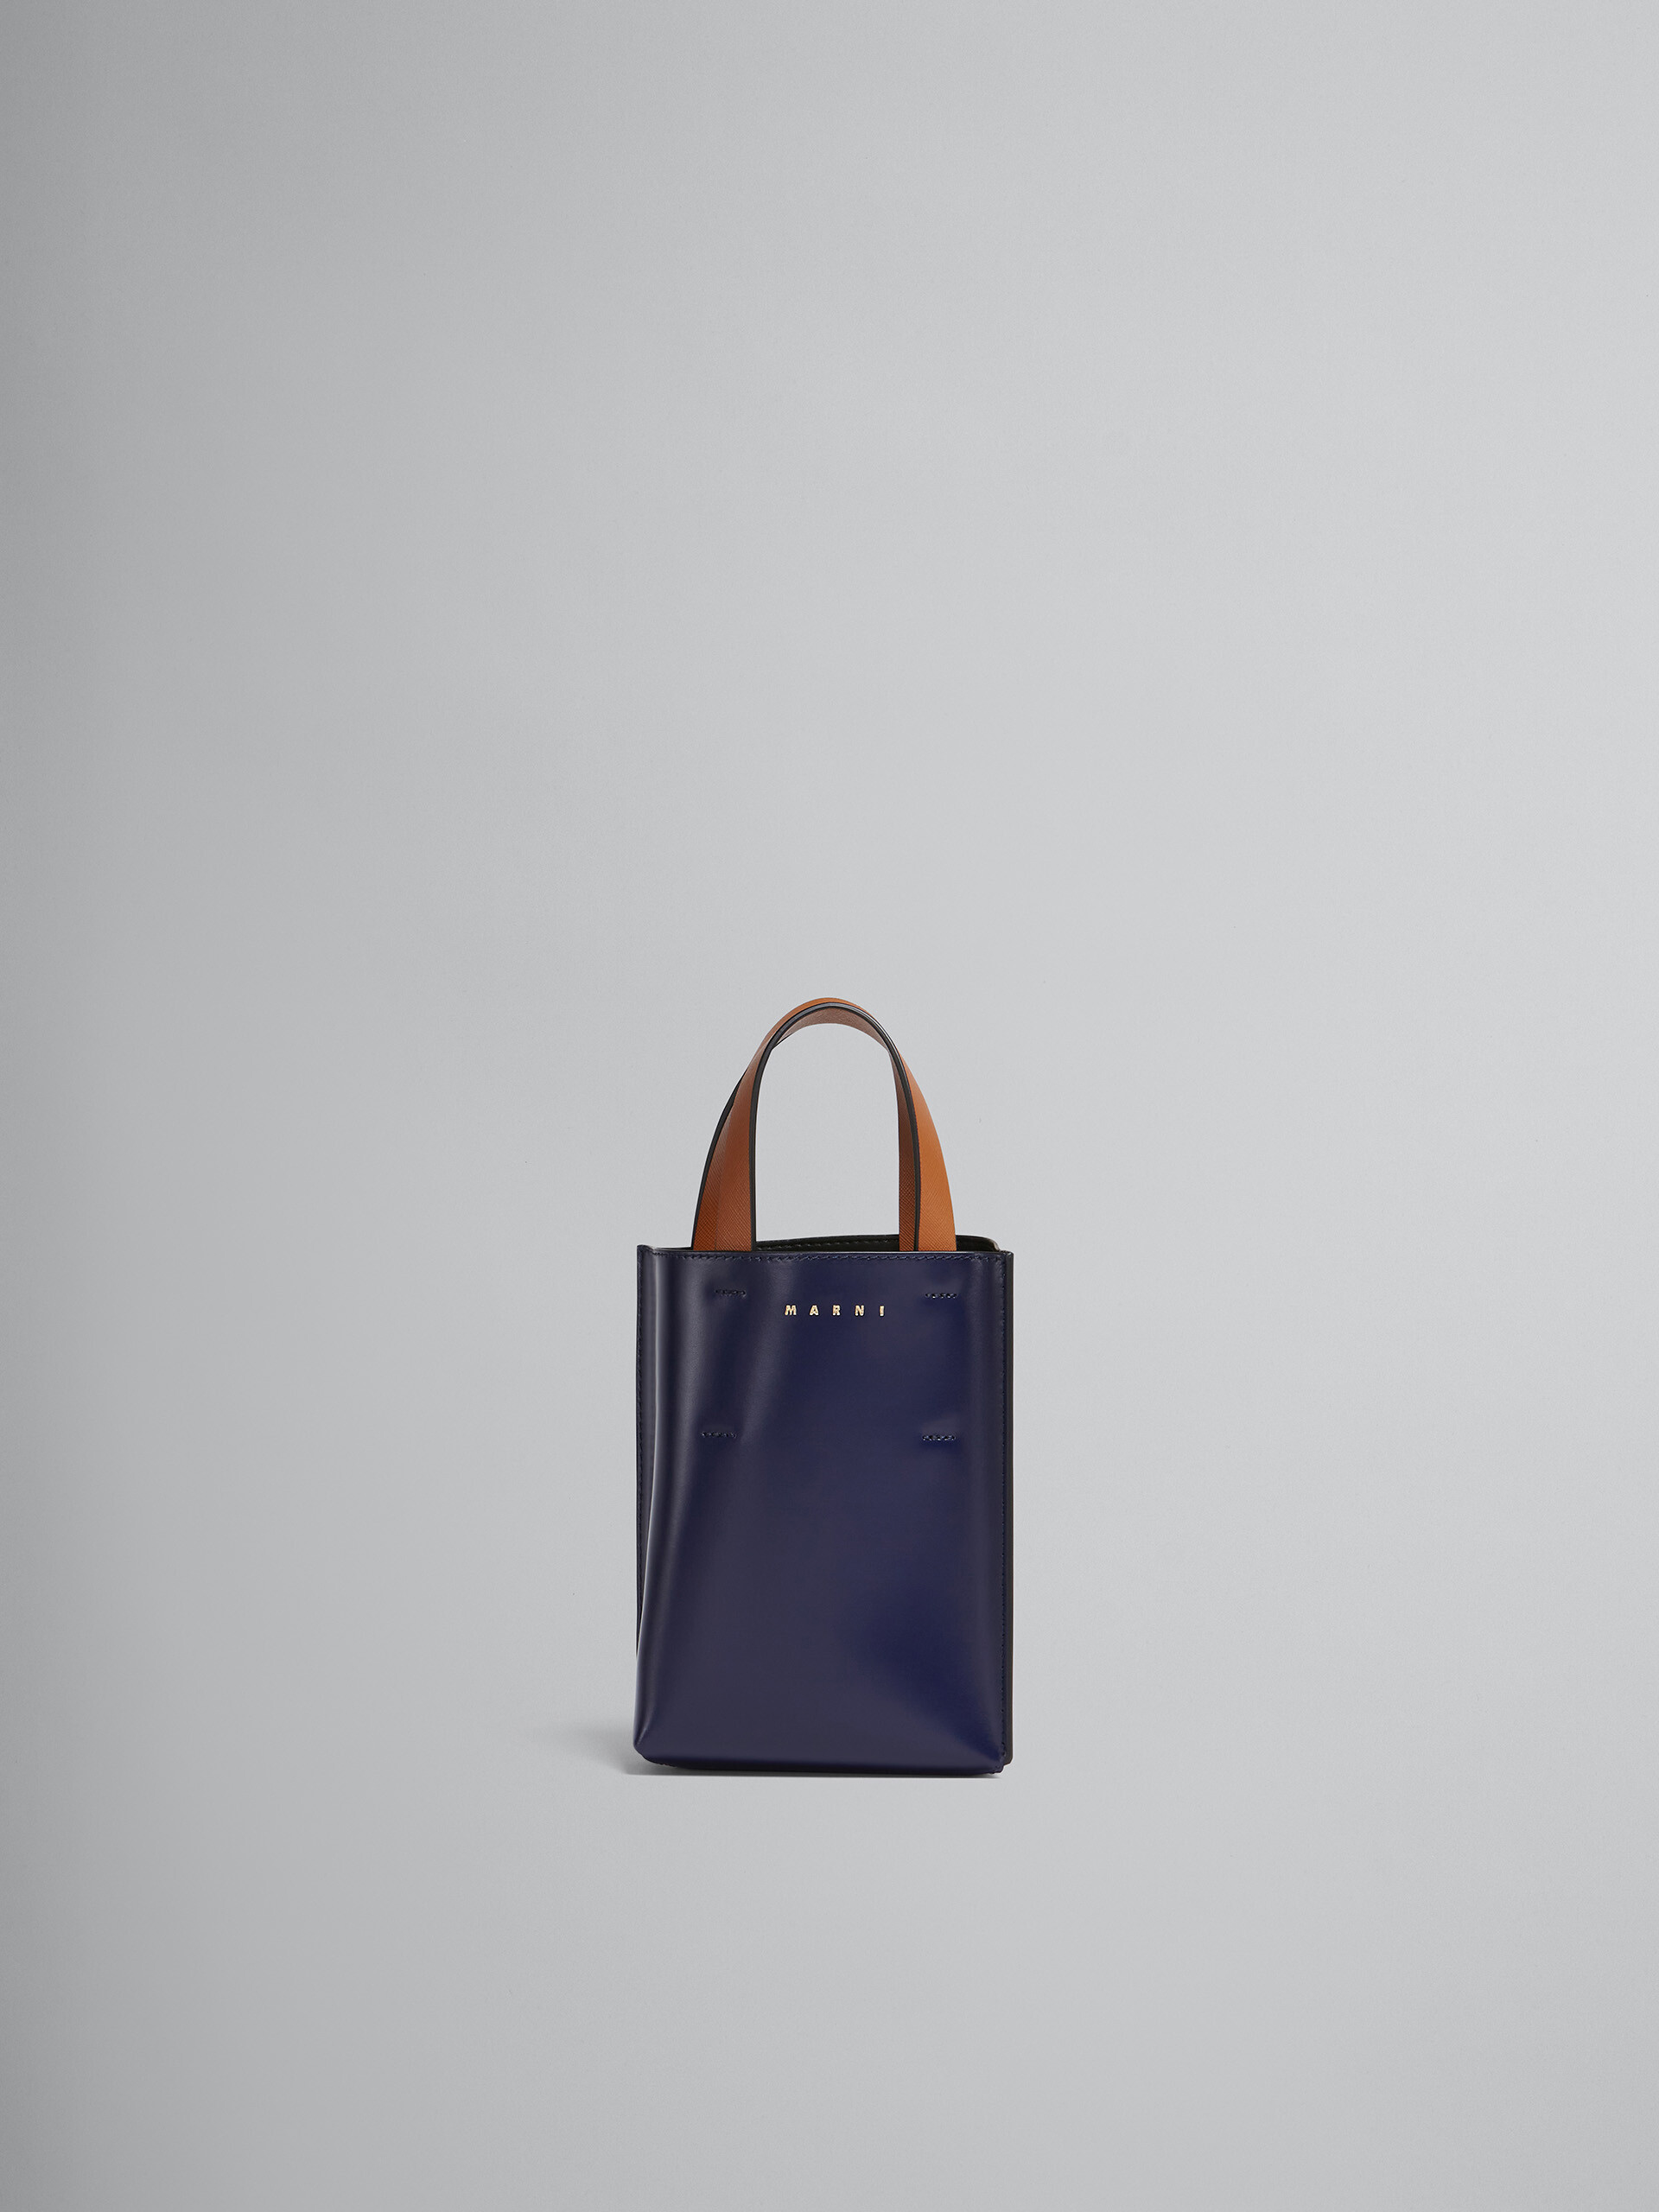 블루 및 화이트 컬러의 가죽 MUSEO 나노 백 - 쇼핑백 - Image 1